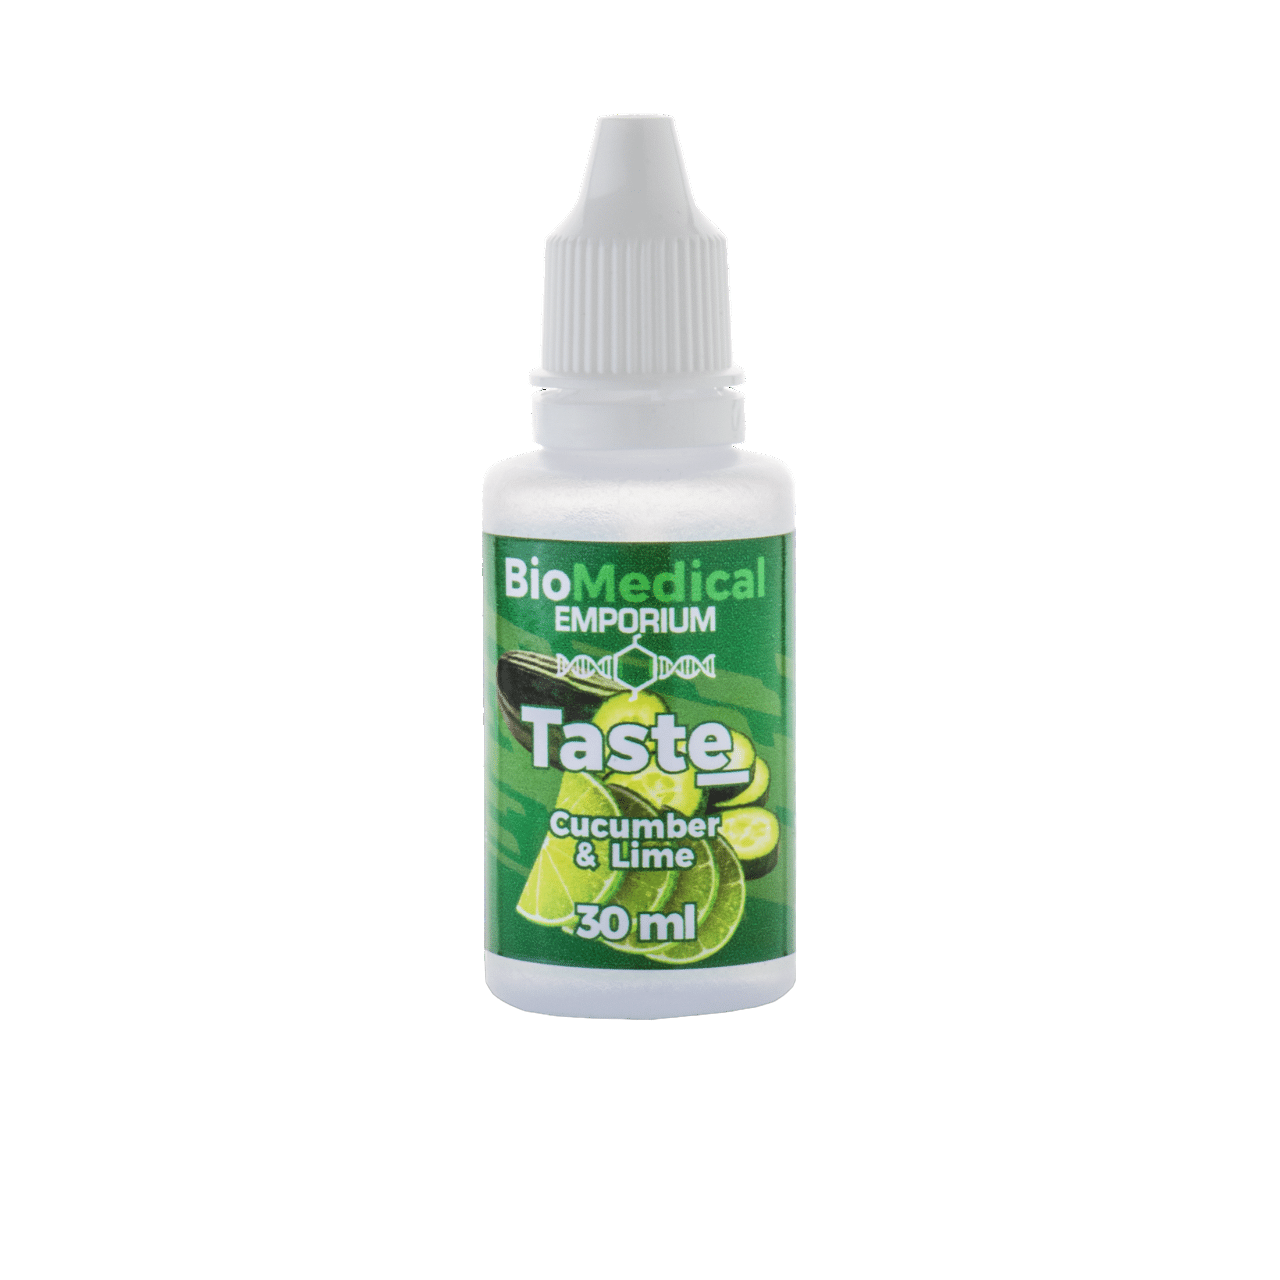 Biomedical Emporium - TASTE Cucumber & Lime 30ml